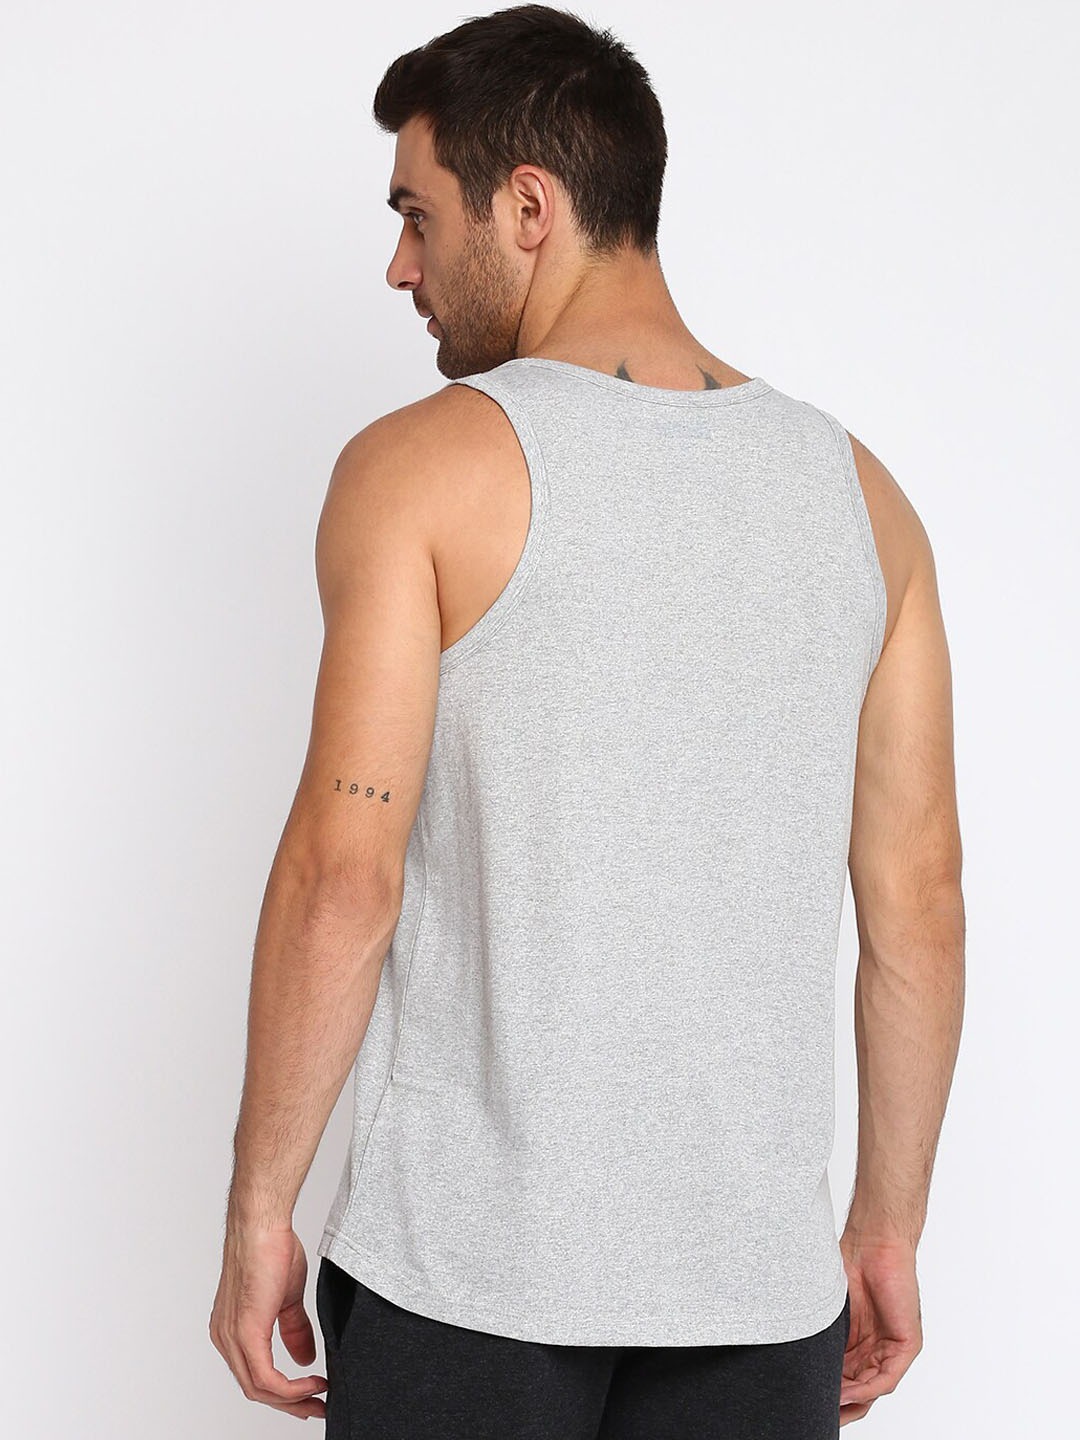 Clothing Innerwear Vests | SPARROWHAWK Men Grey Melange Sustainable Innerwear Vests - TU93064